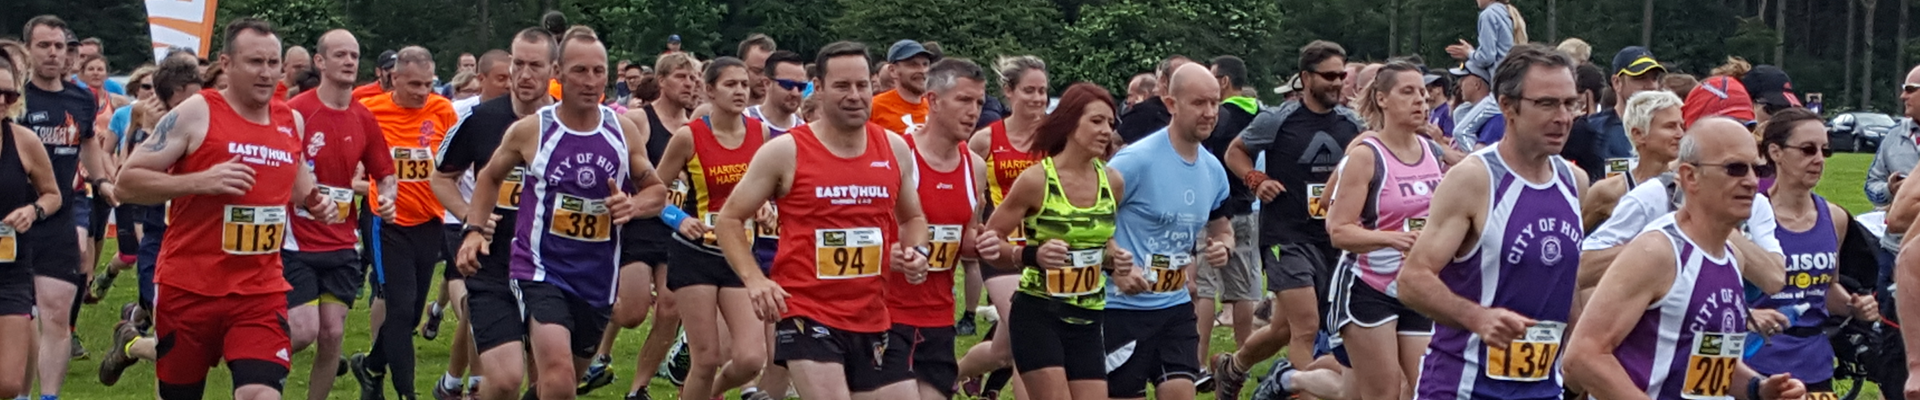 Dalby Conquer the Forest Half Marathon & 10k 2019